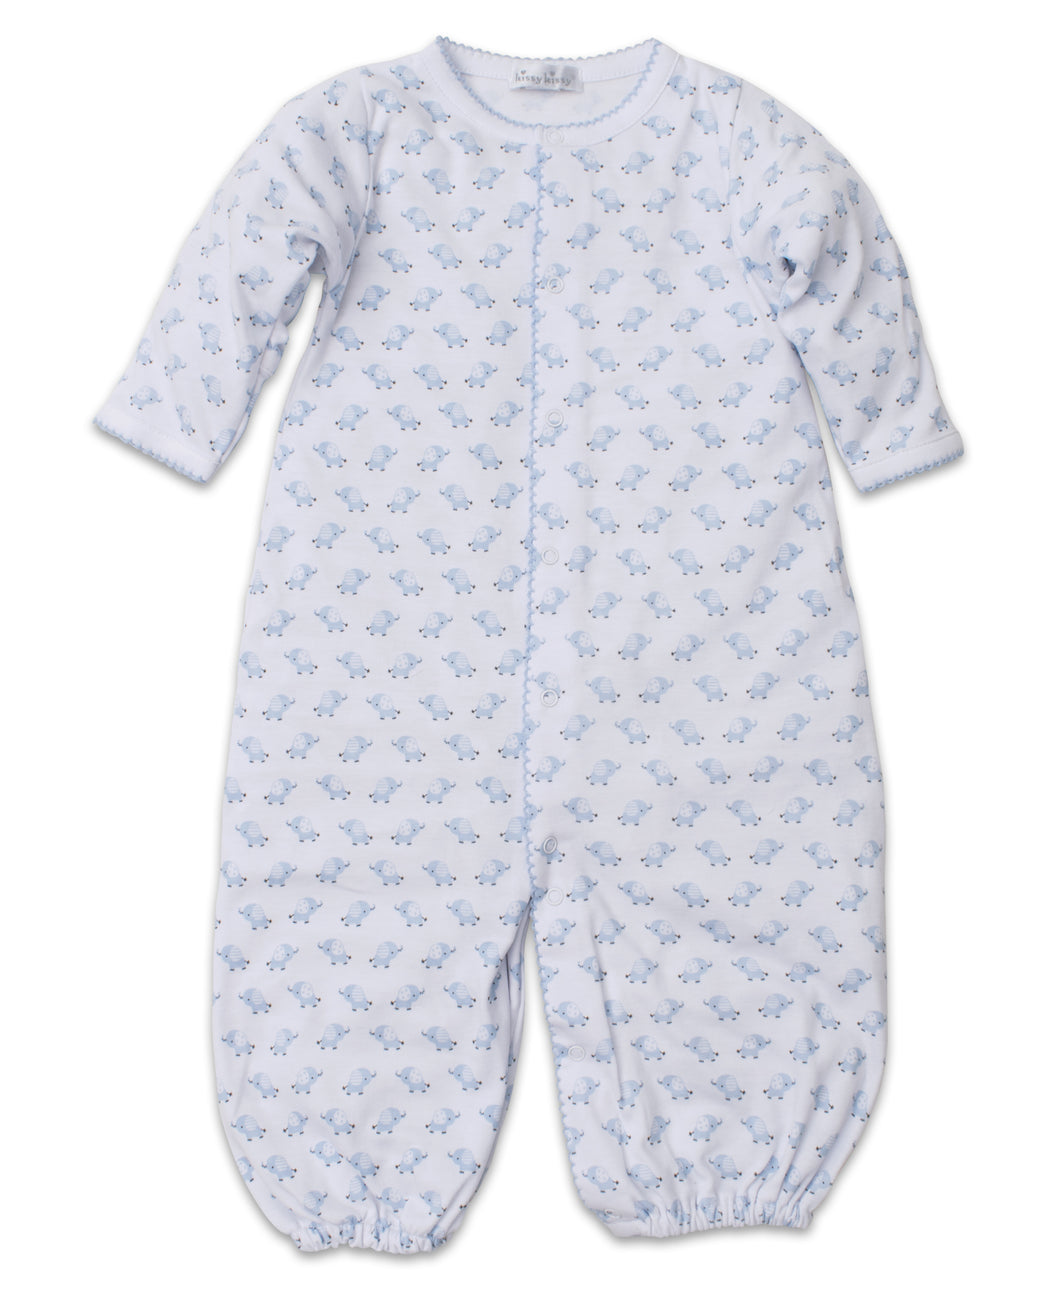 Baby Trunks Converter Gown - Light Blue